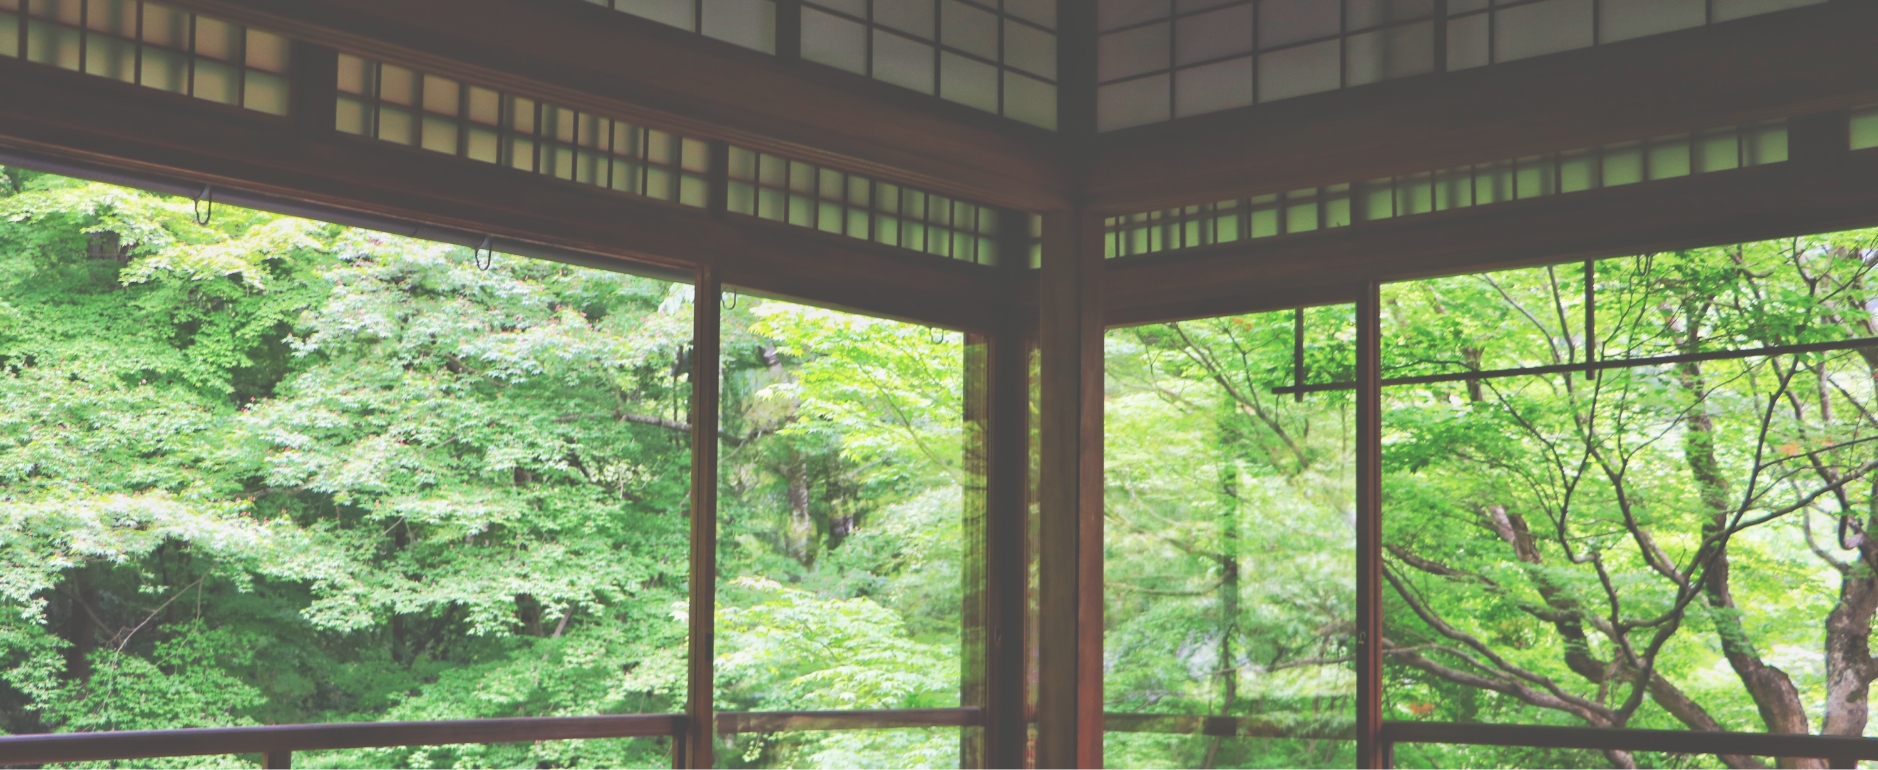 和室の窓から生い茂る緑が見えている写真